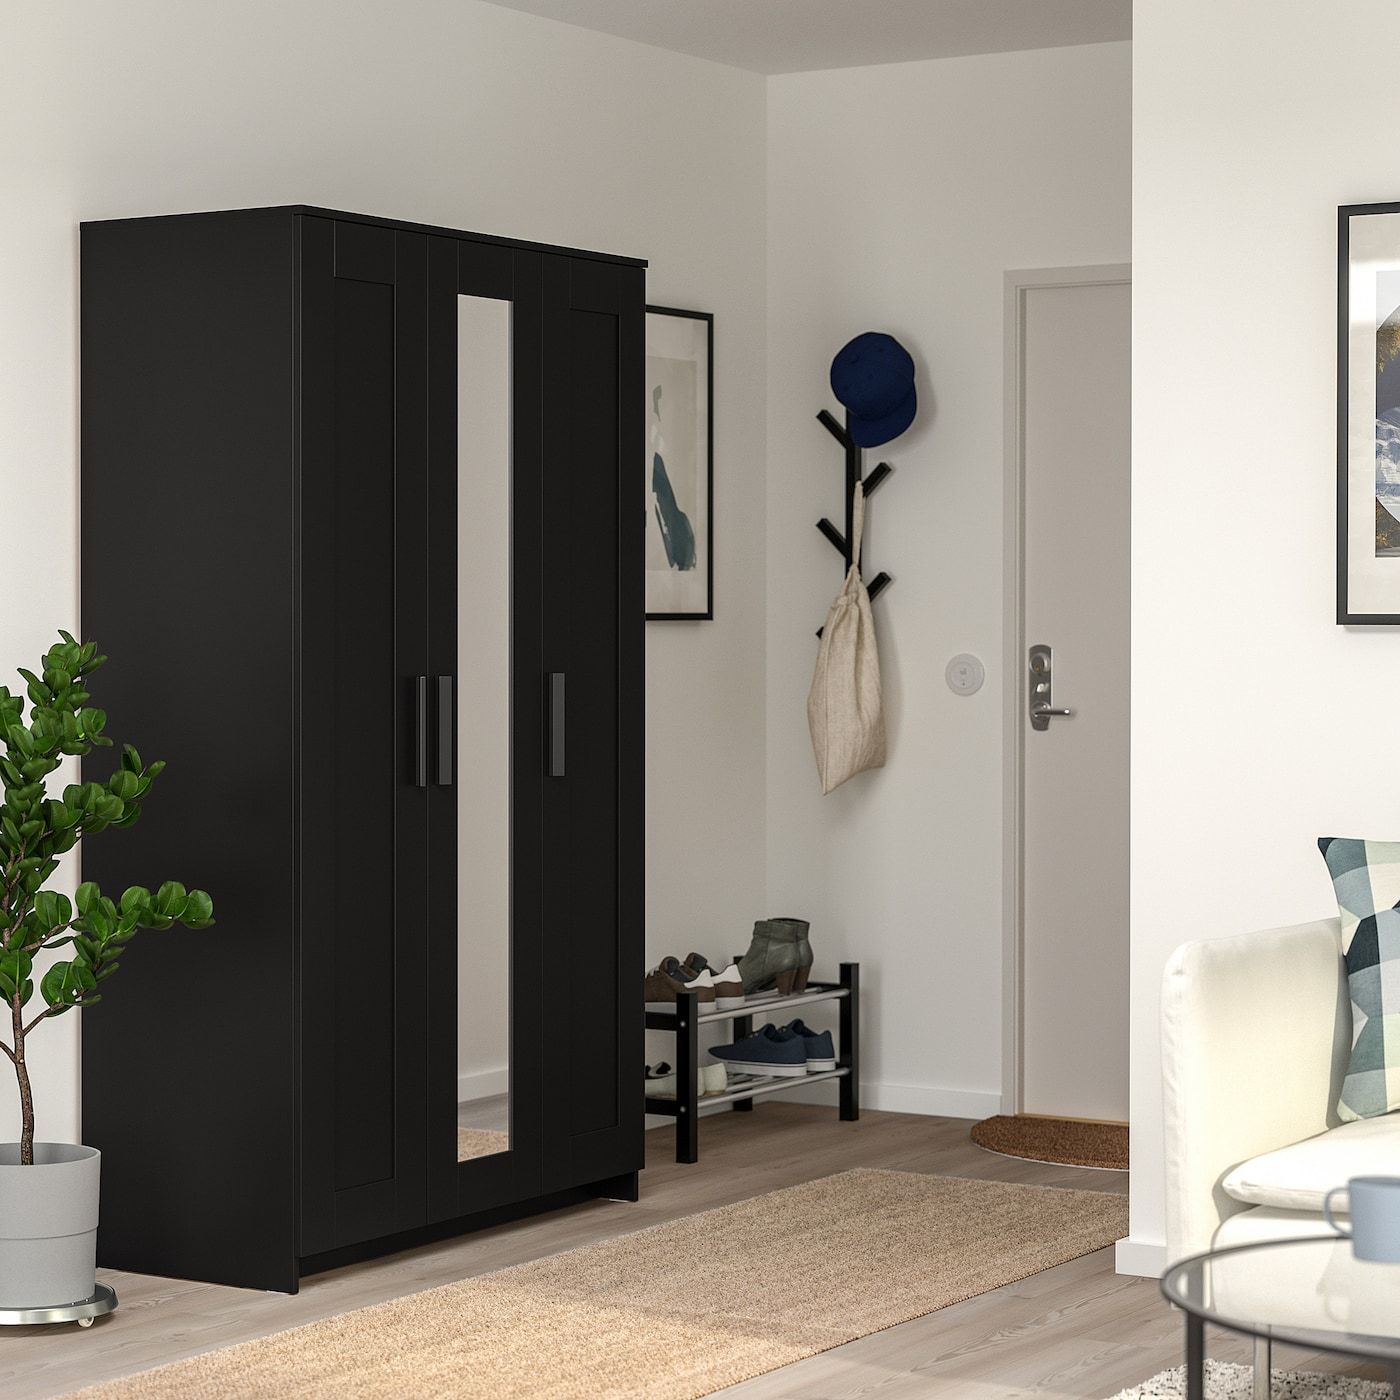 Wardrobe With 3 Doors, Brimnes, Black, 117x190 Cm – Ikea Regarding Black 3 Door Wardrobes (View 2 of 10)